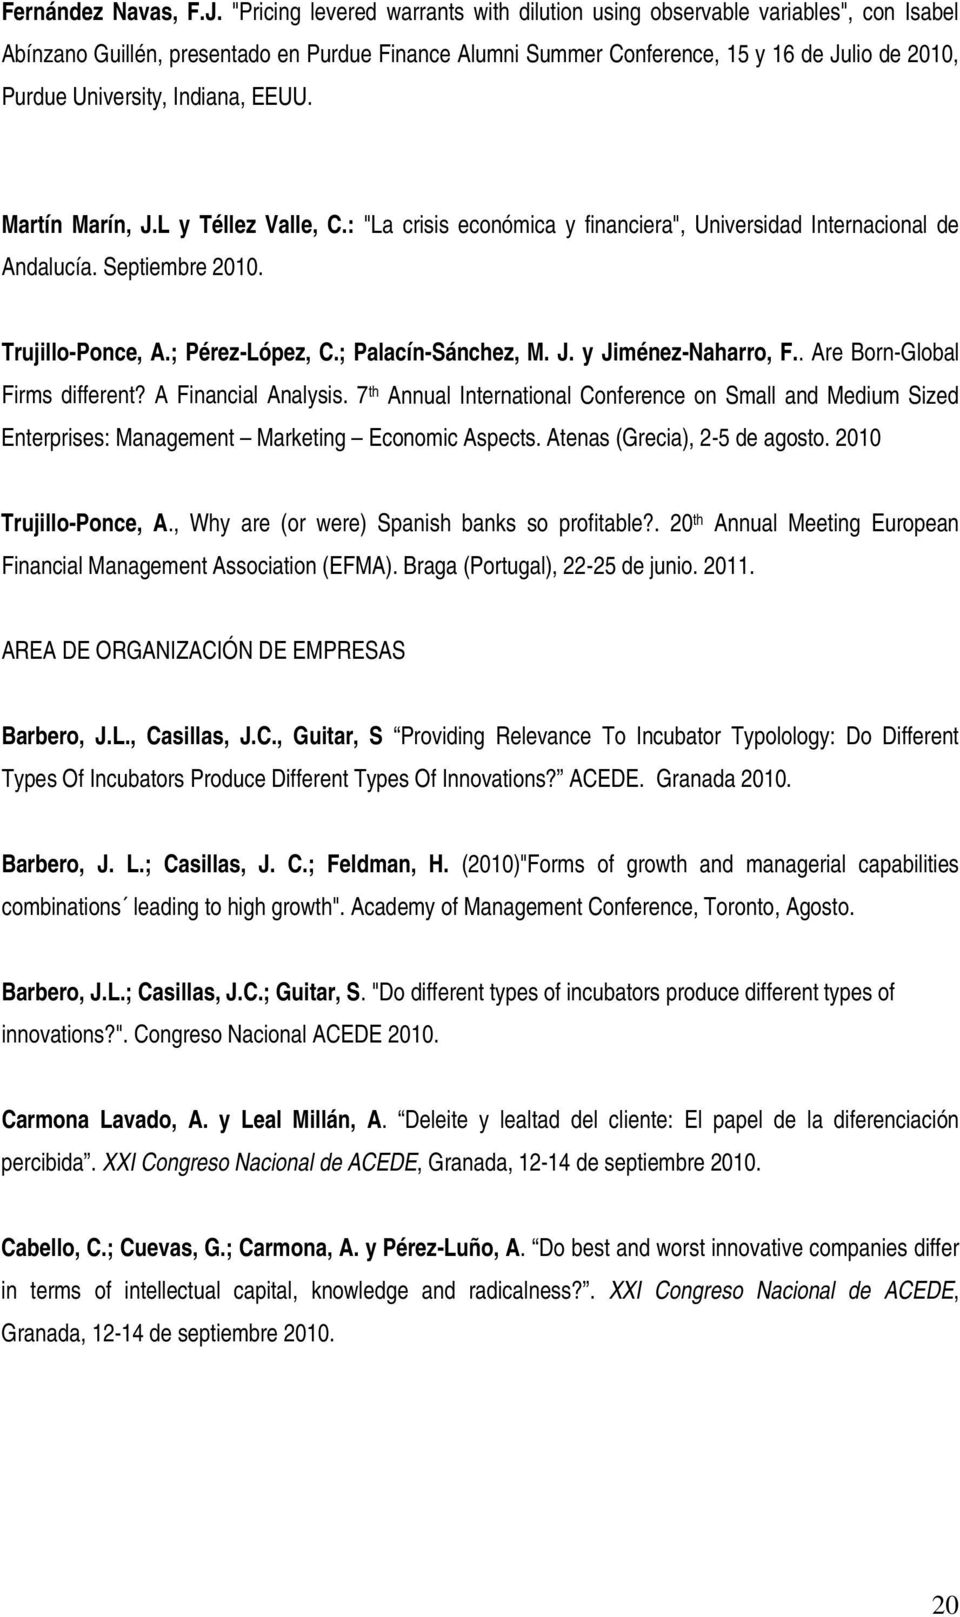 Indiana, EEUU. Martín Marín, J.L y Téllez Valle, C.: "La crisis económica y financiera", Universidad Internacional de Andalucía. Septiembre 2010. Trujillo-Ponce, A.; Pérez-López, C.